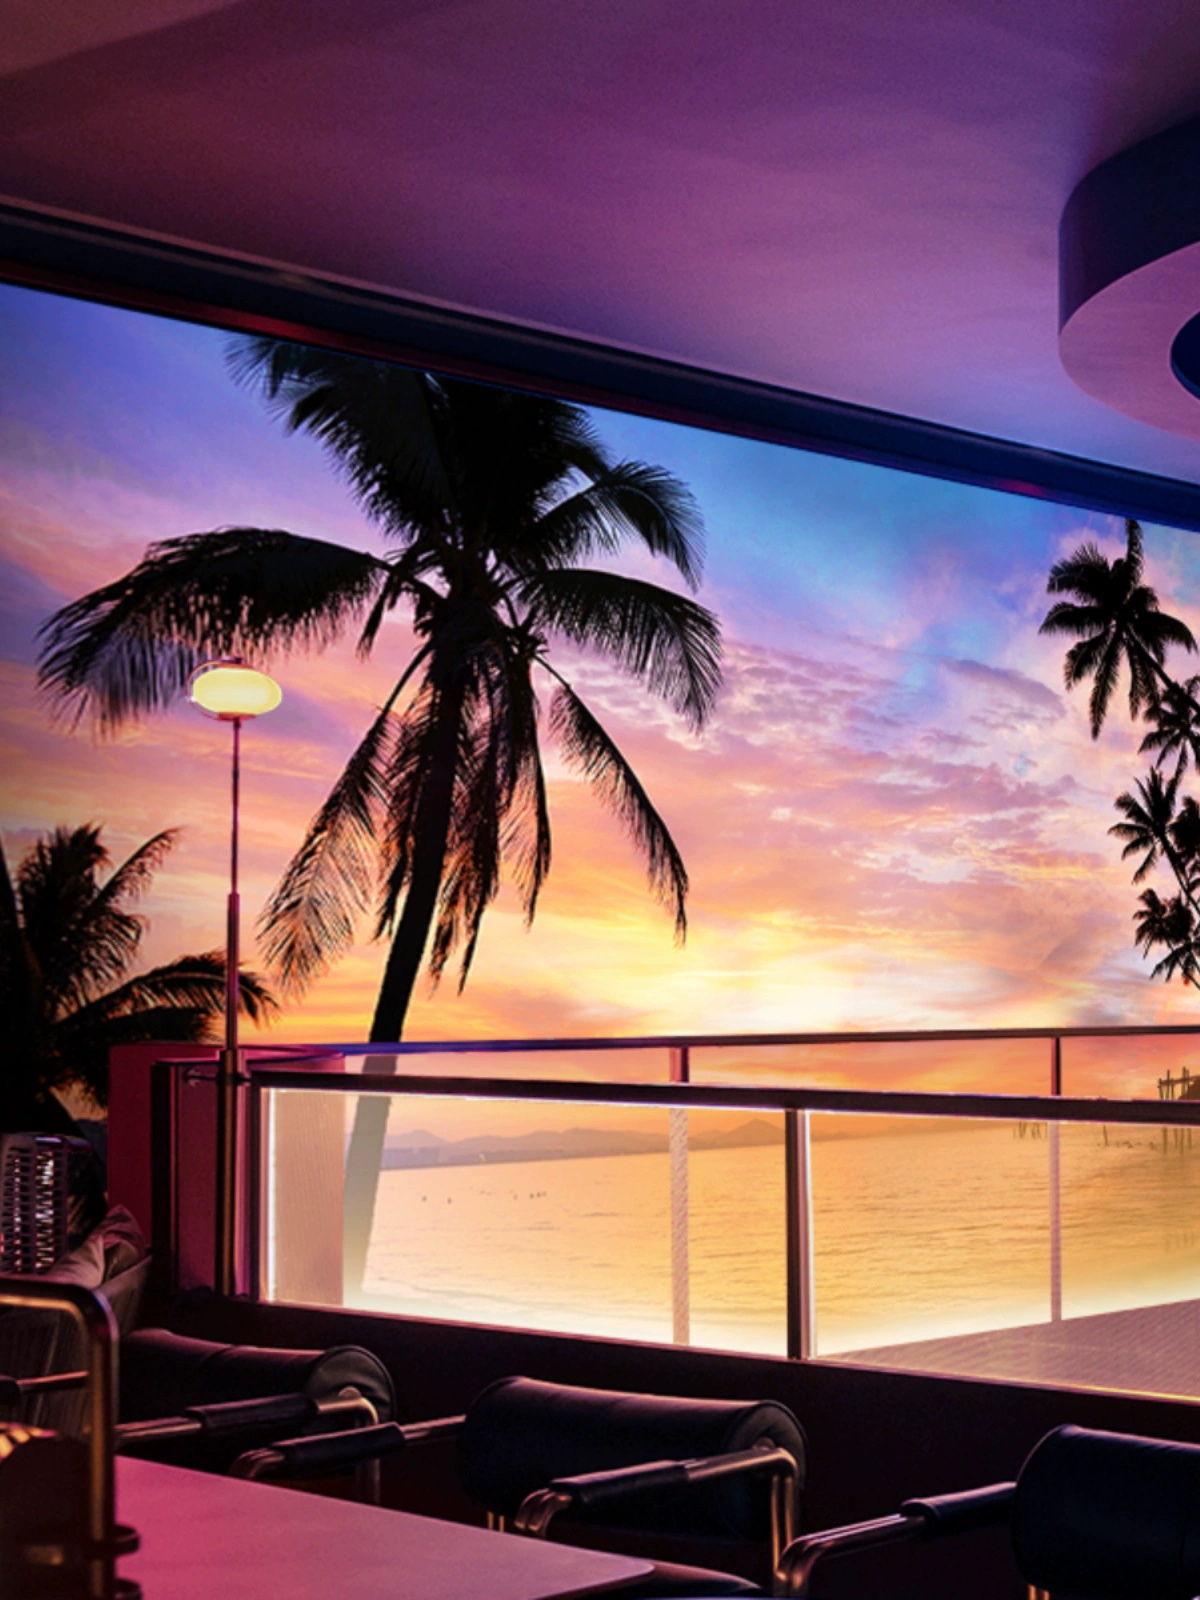 夏威夷海滩海边风景壁纸东南亚椰子树壁画海景装饰露营风背景墙纸